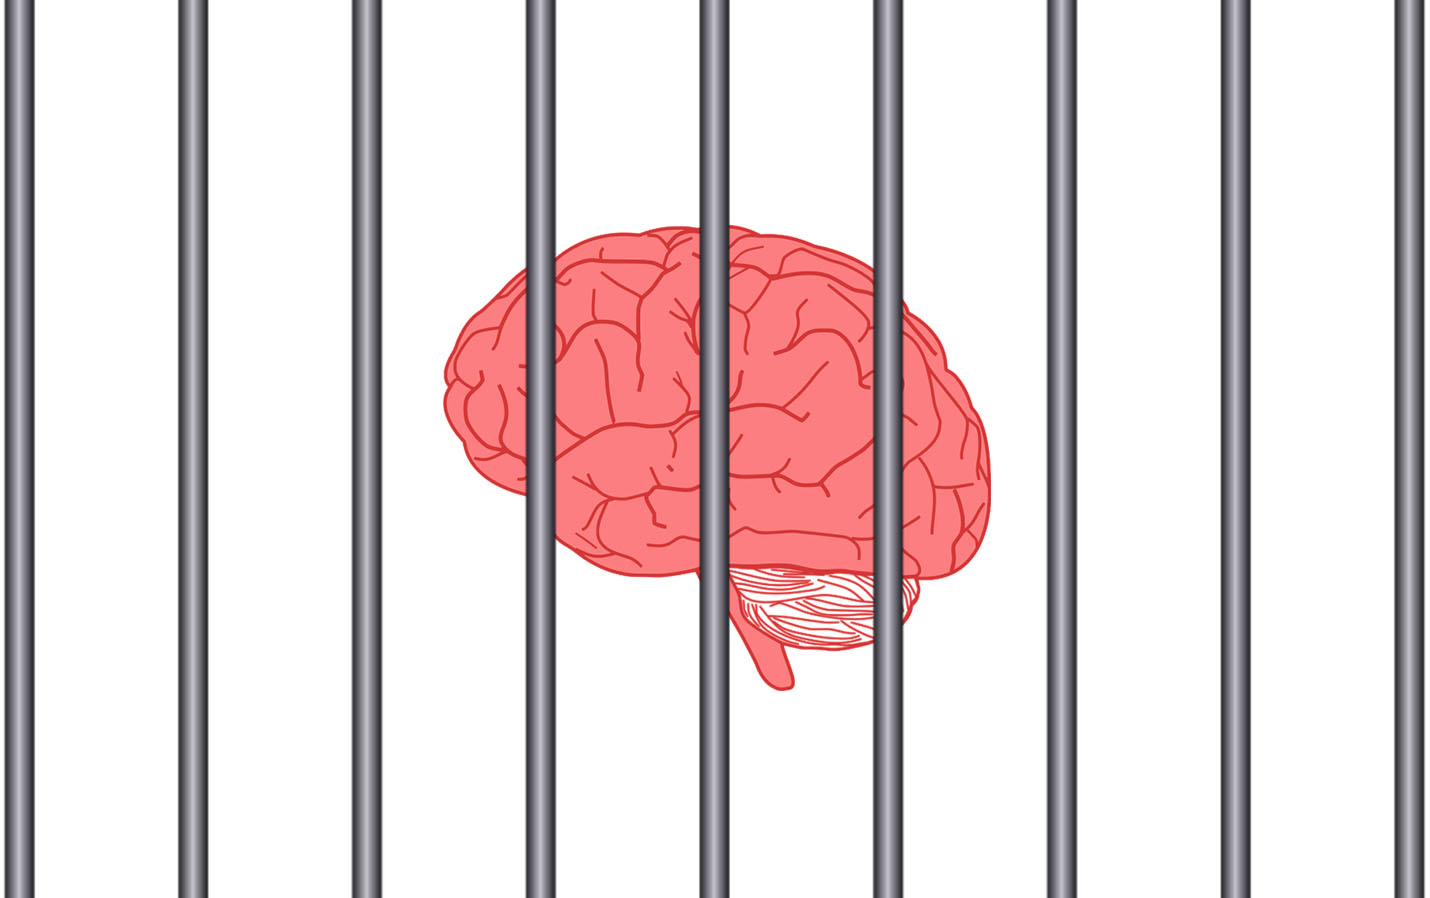 Limiting Beliefs - Brain In Jail